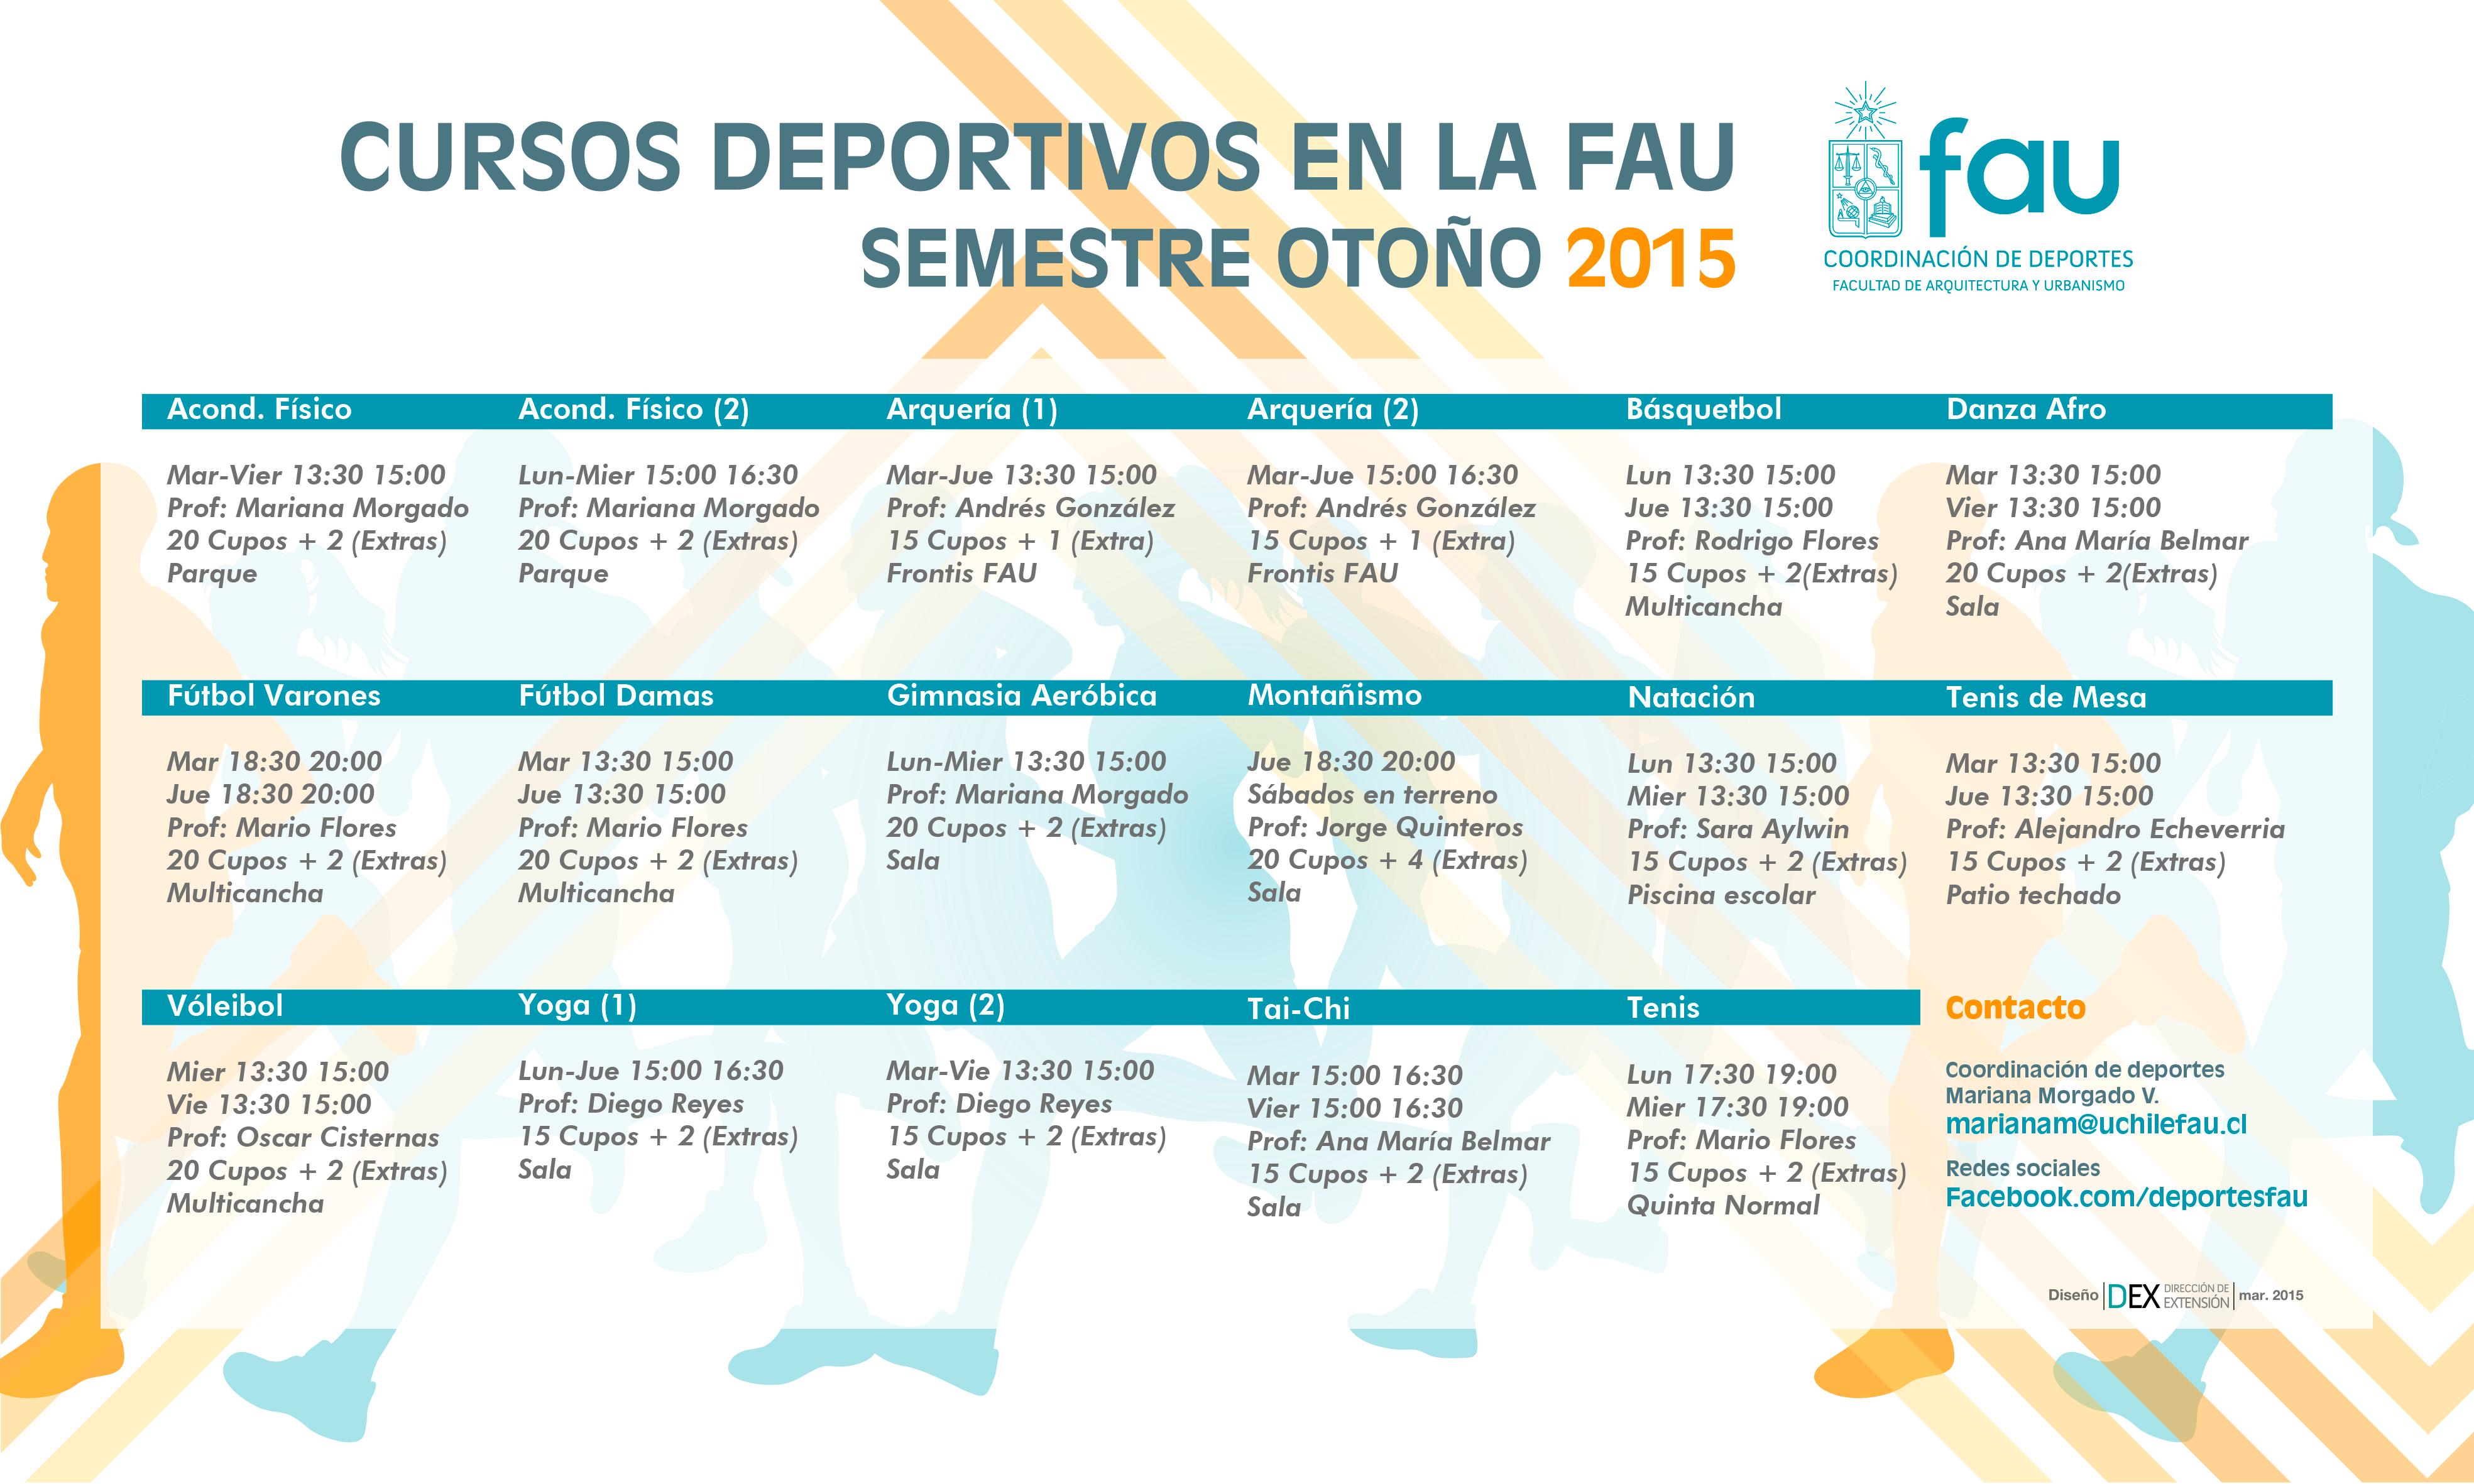 CFG's Deportivos primer semestre 2015